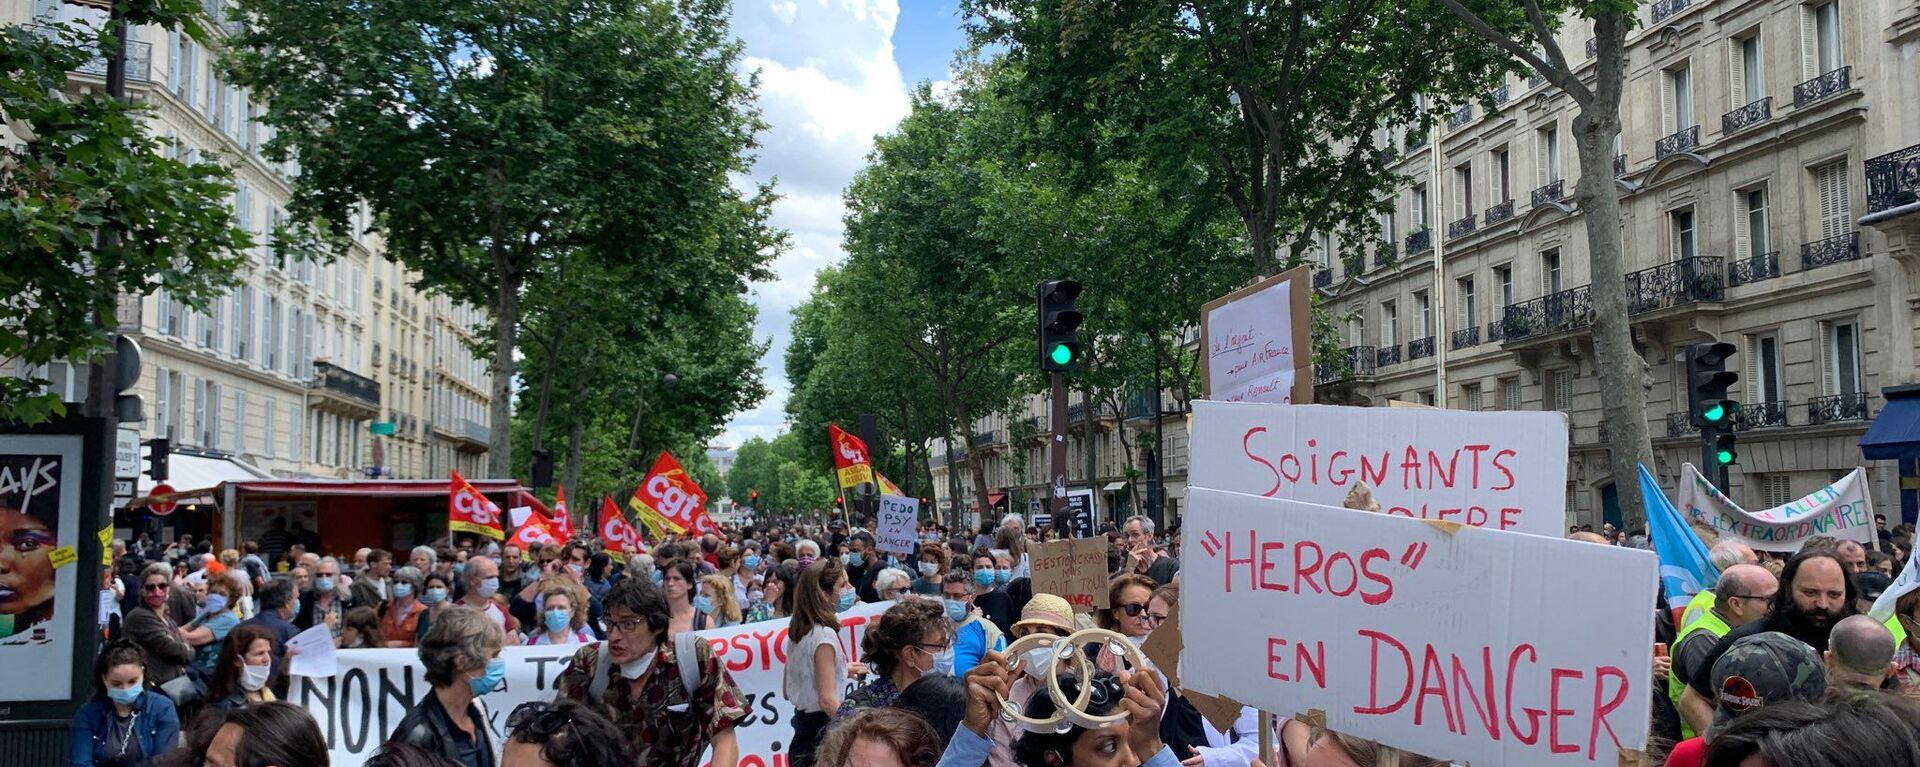 مظاهرات الأطباء يطالبون بتحسين شروط العمل في باريس، فرنسا 16 يونيو 2020 - سبوتنيك عربي, 1920, 16.06.2020